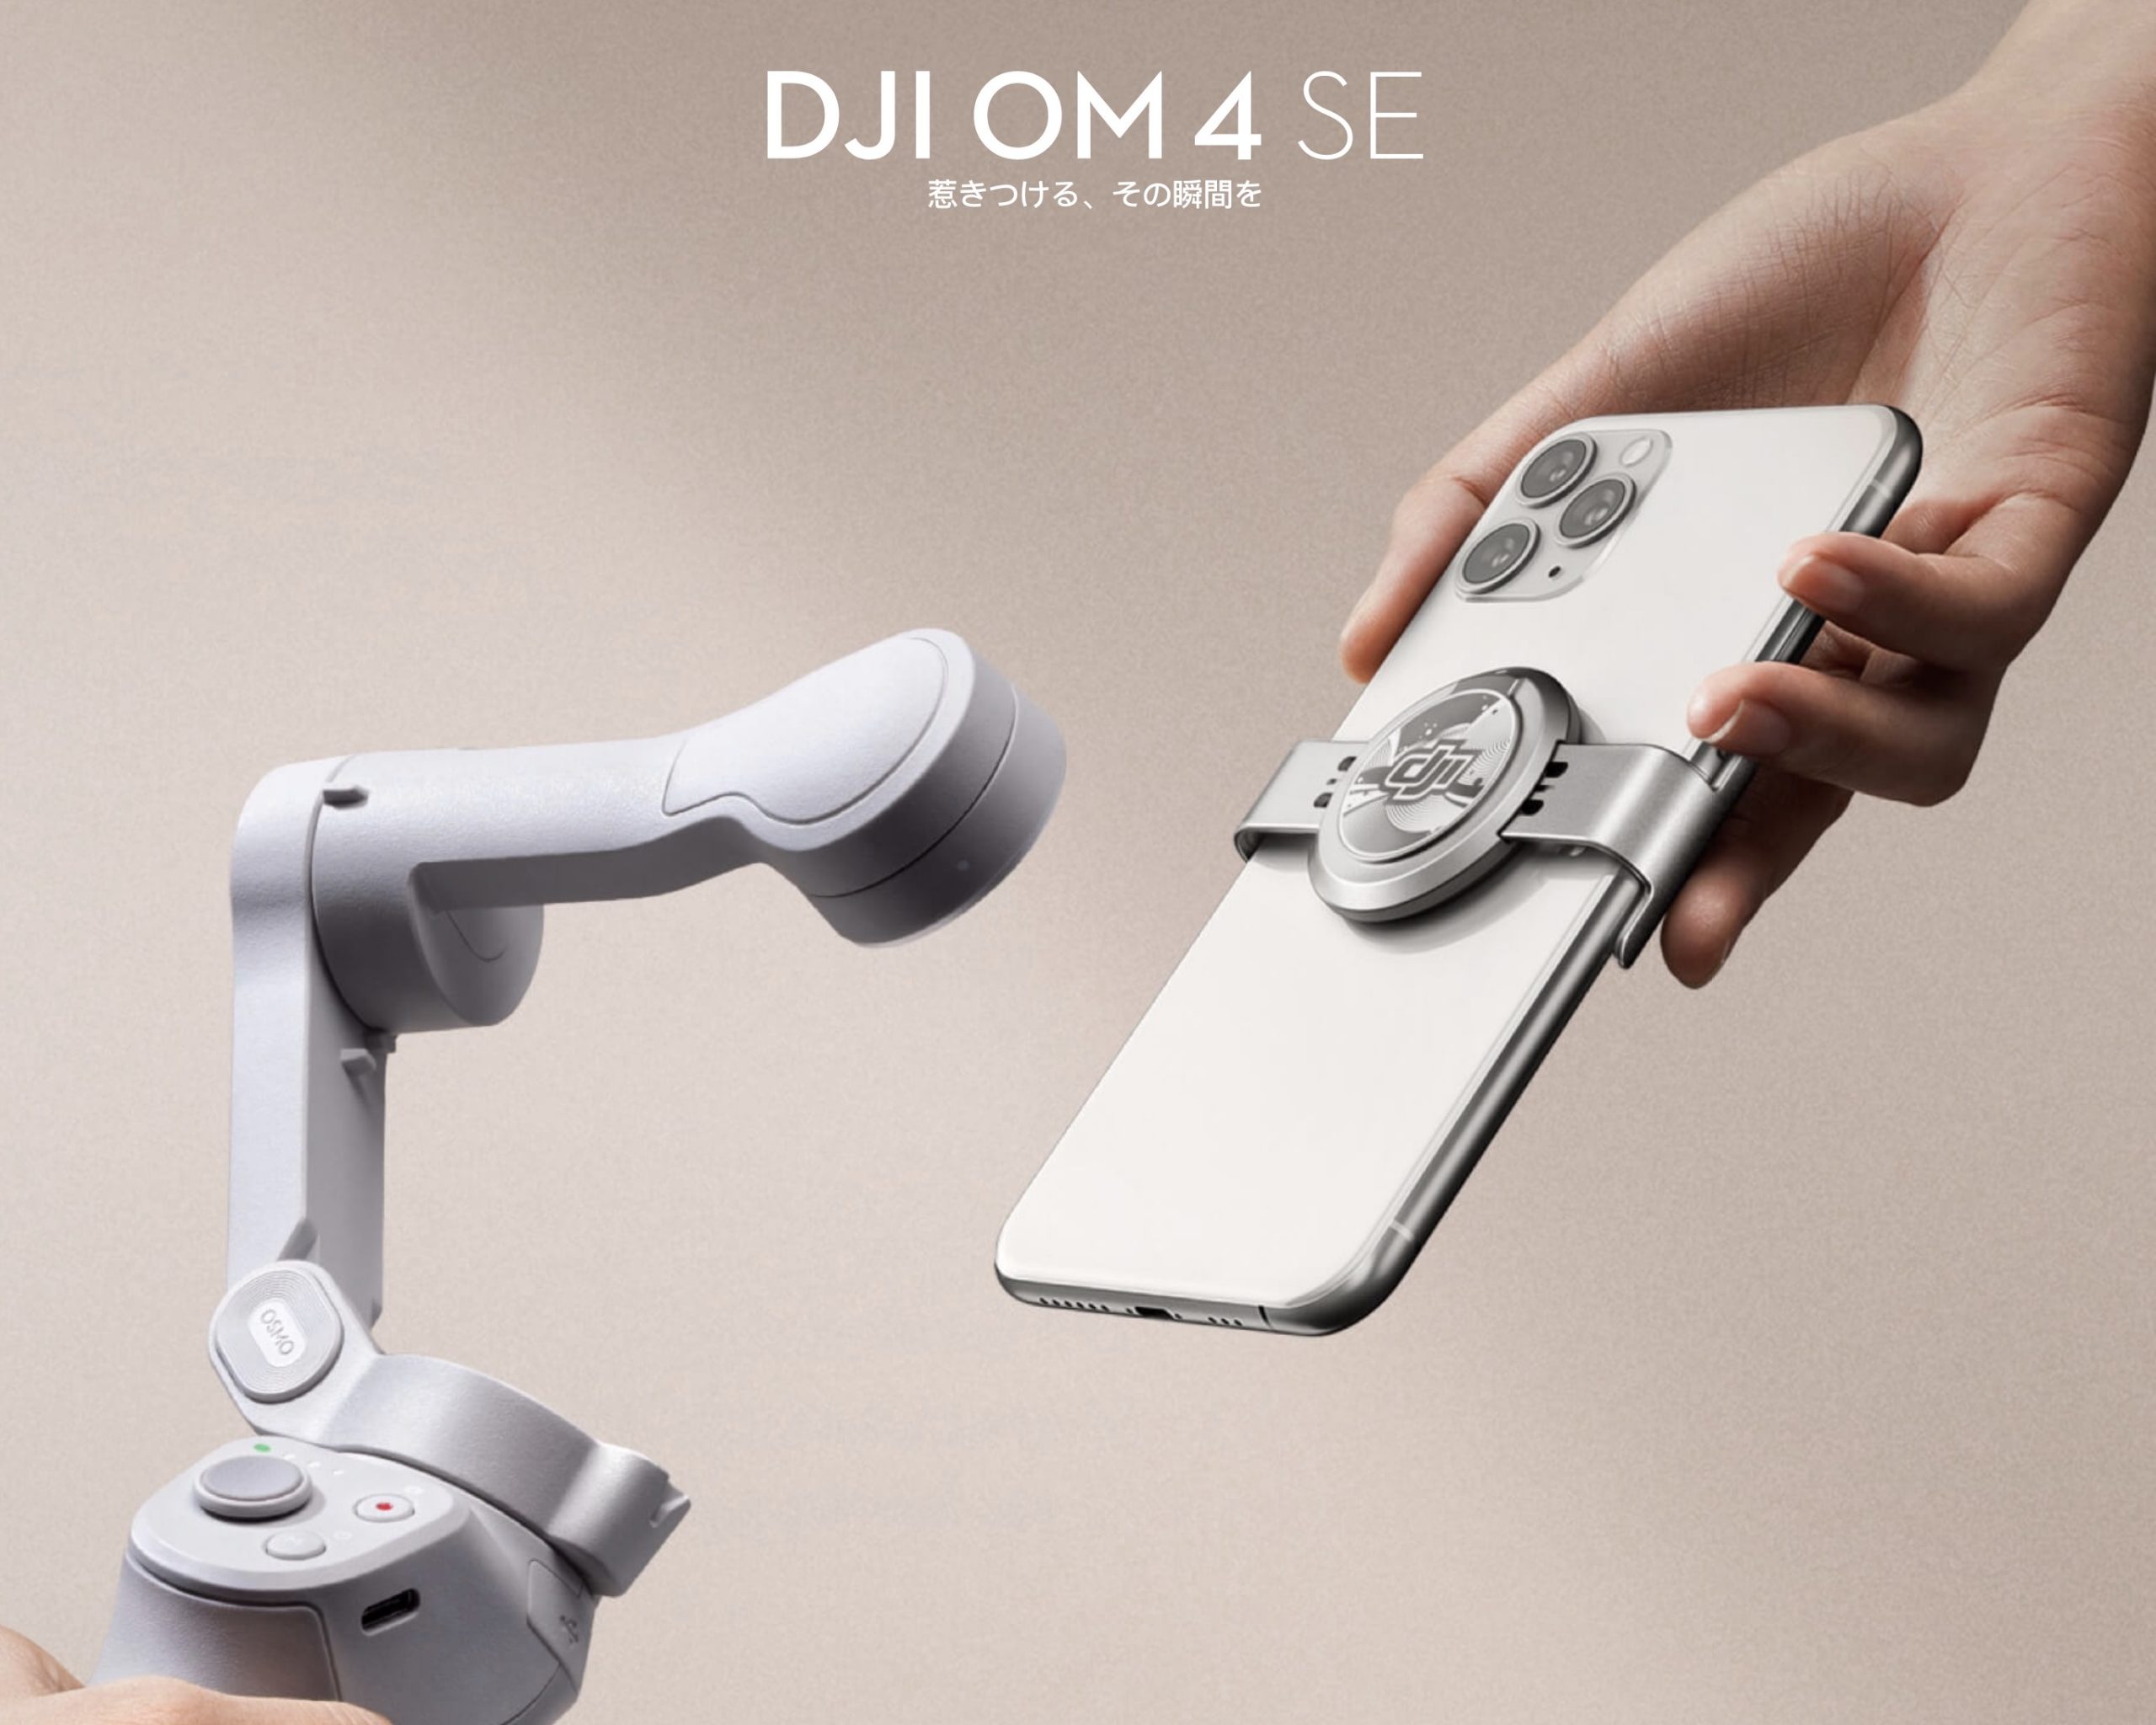 プレスリリース情報】DJI OM 4 SEが発売 | INFO DRONE〔インフォ 